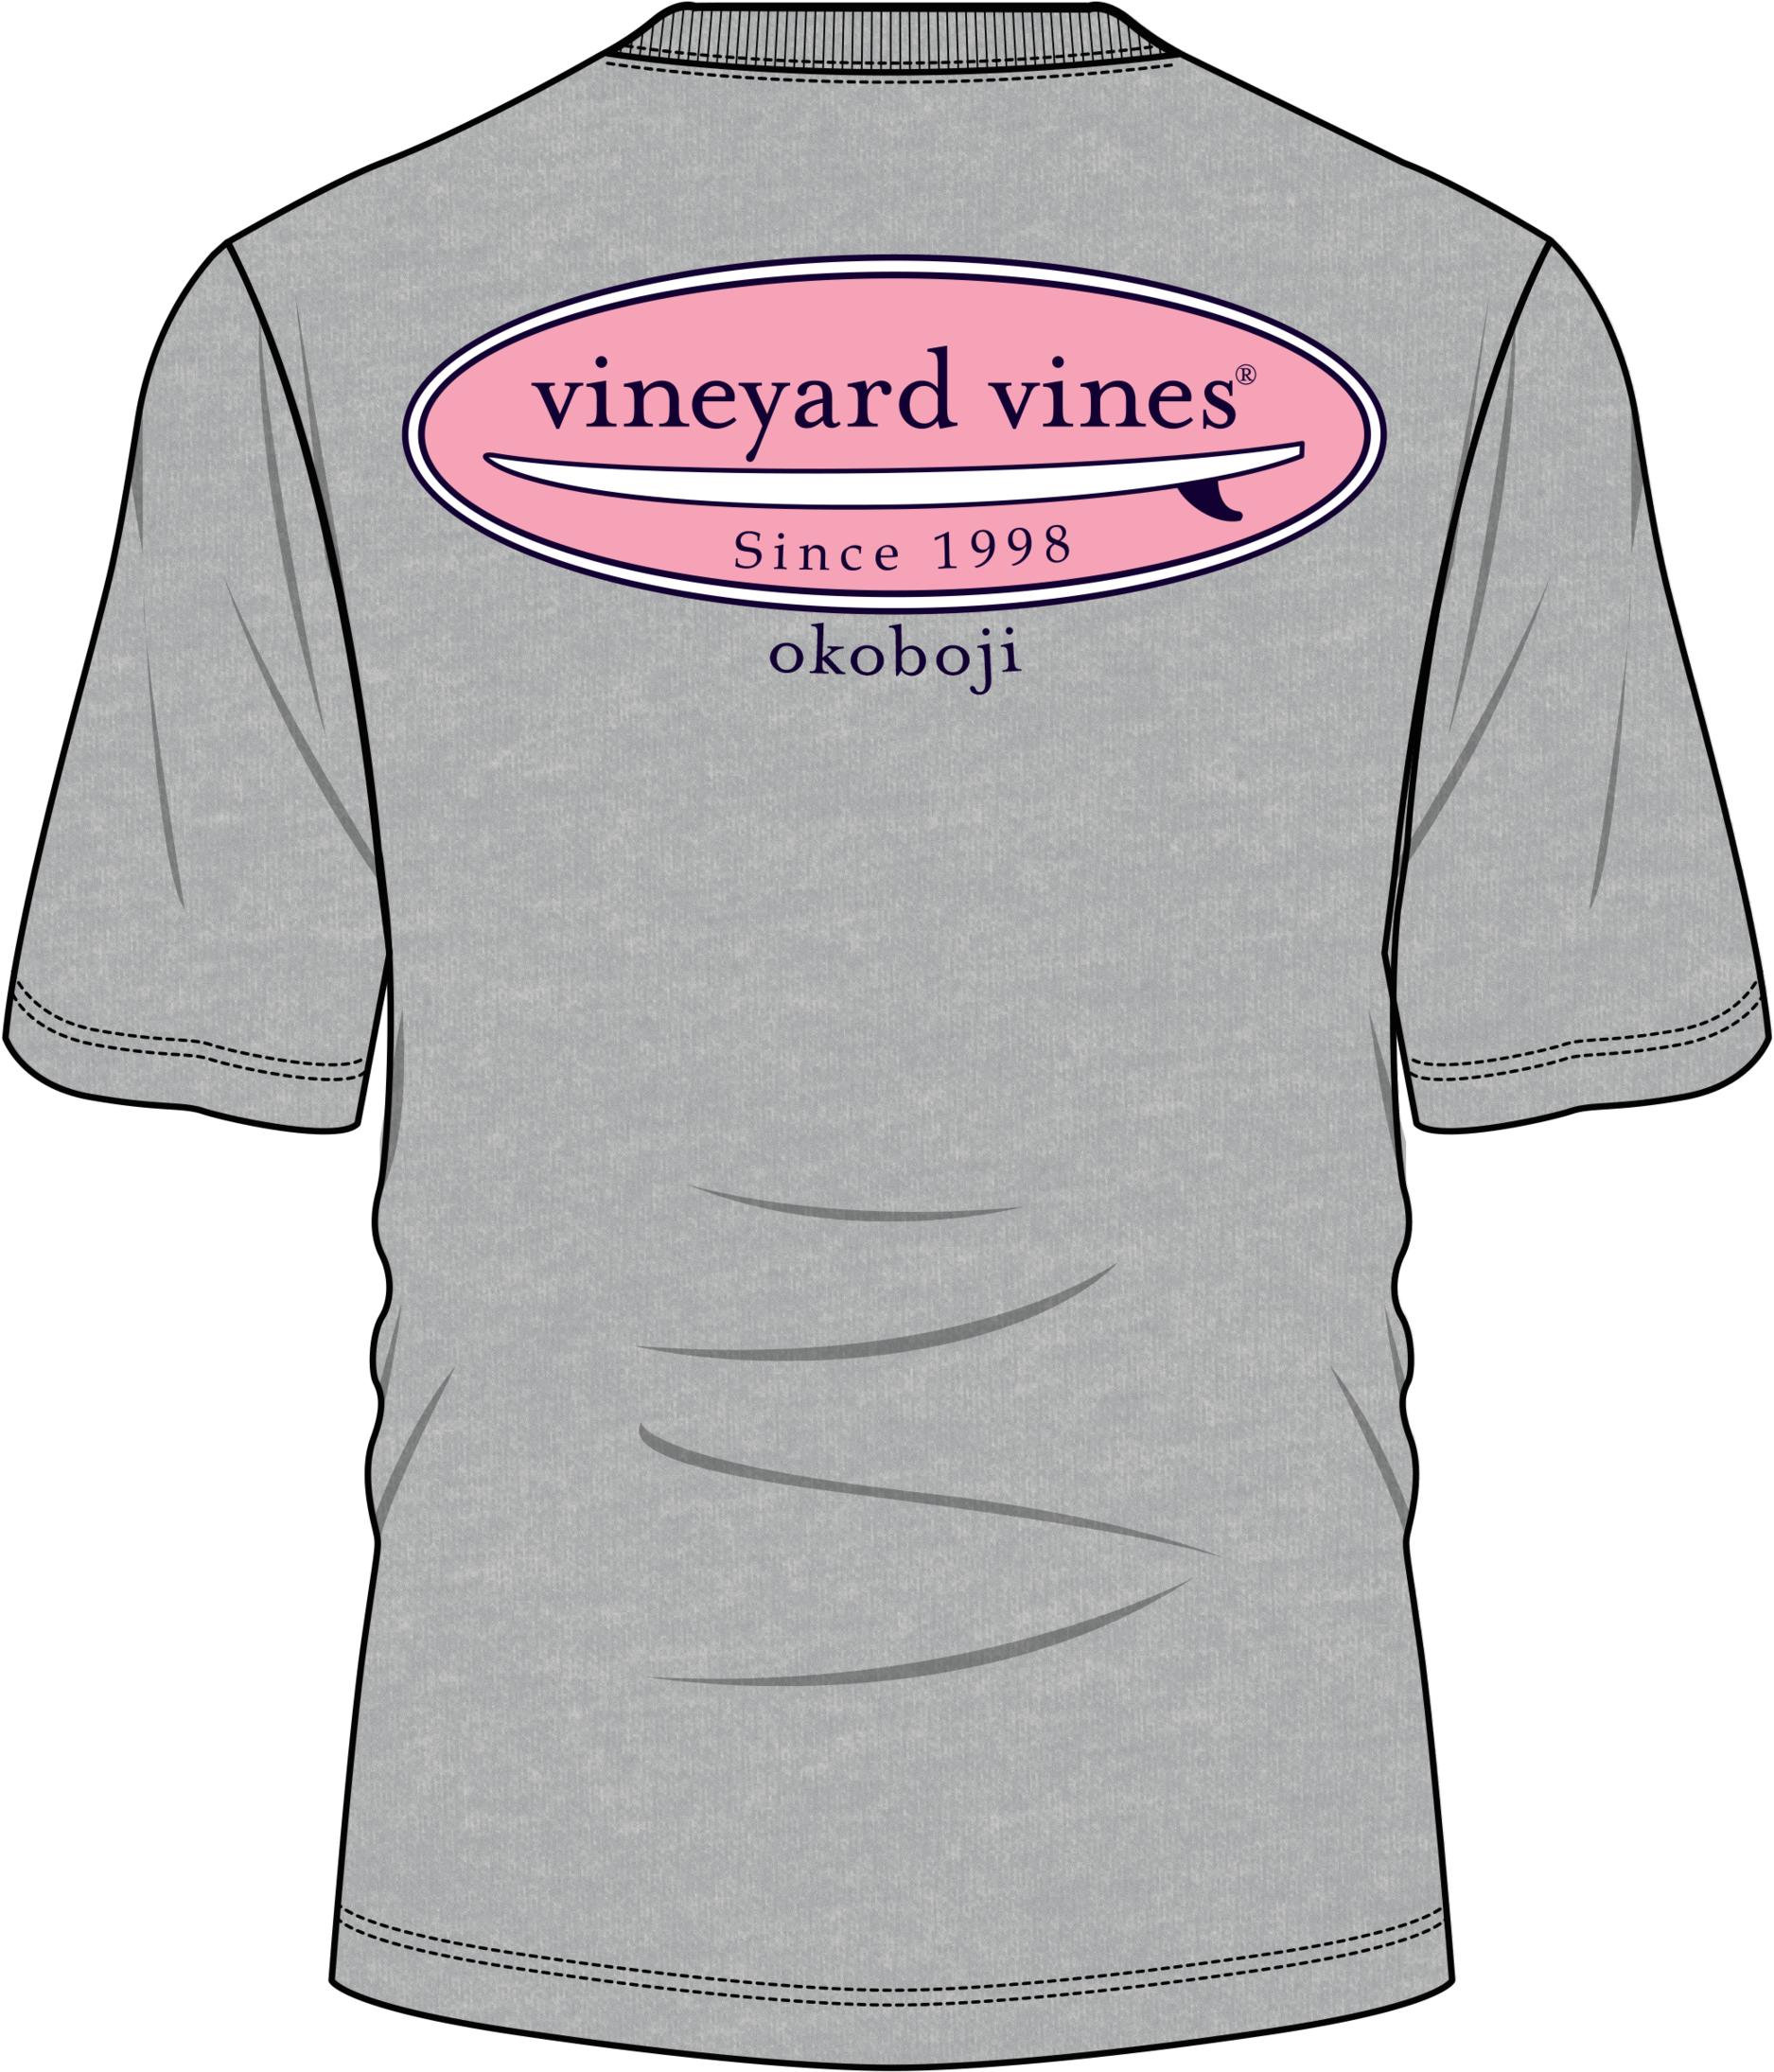 Vineyard Vines Okoboji The Board Tee - Vineyard Vines Clipart (1875x2190), Png Download